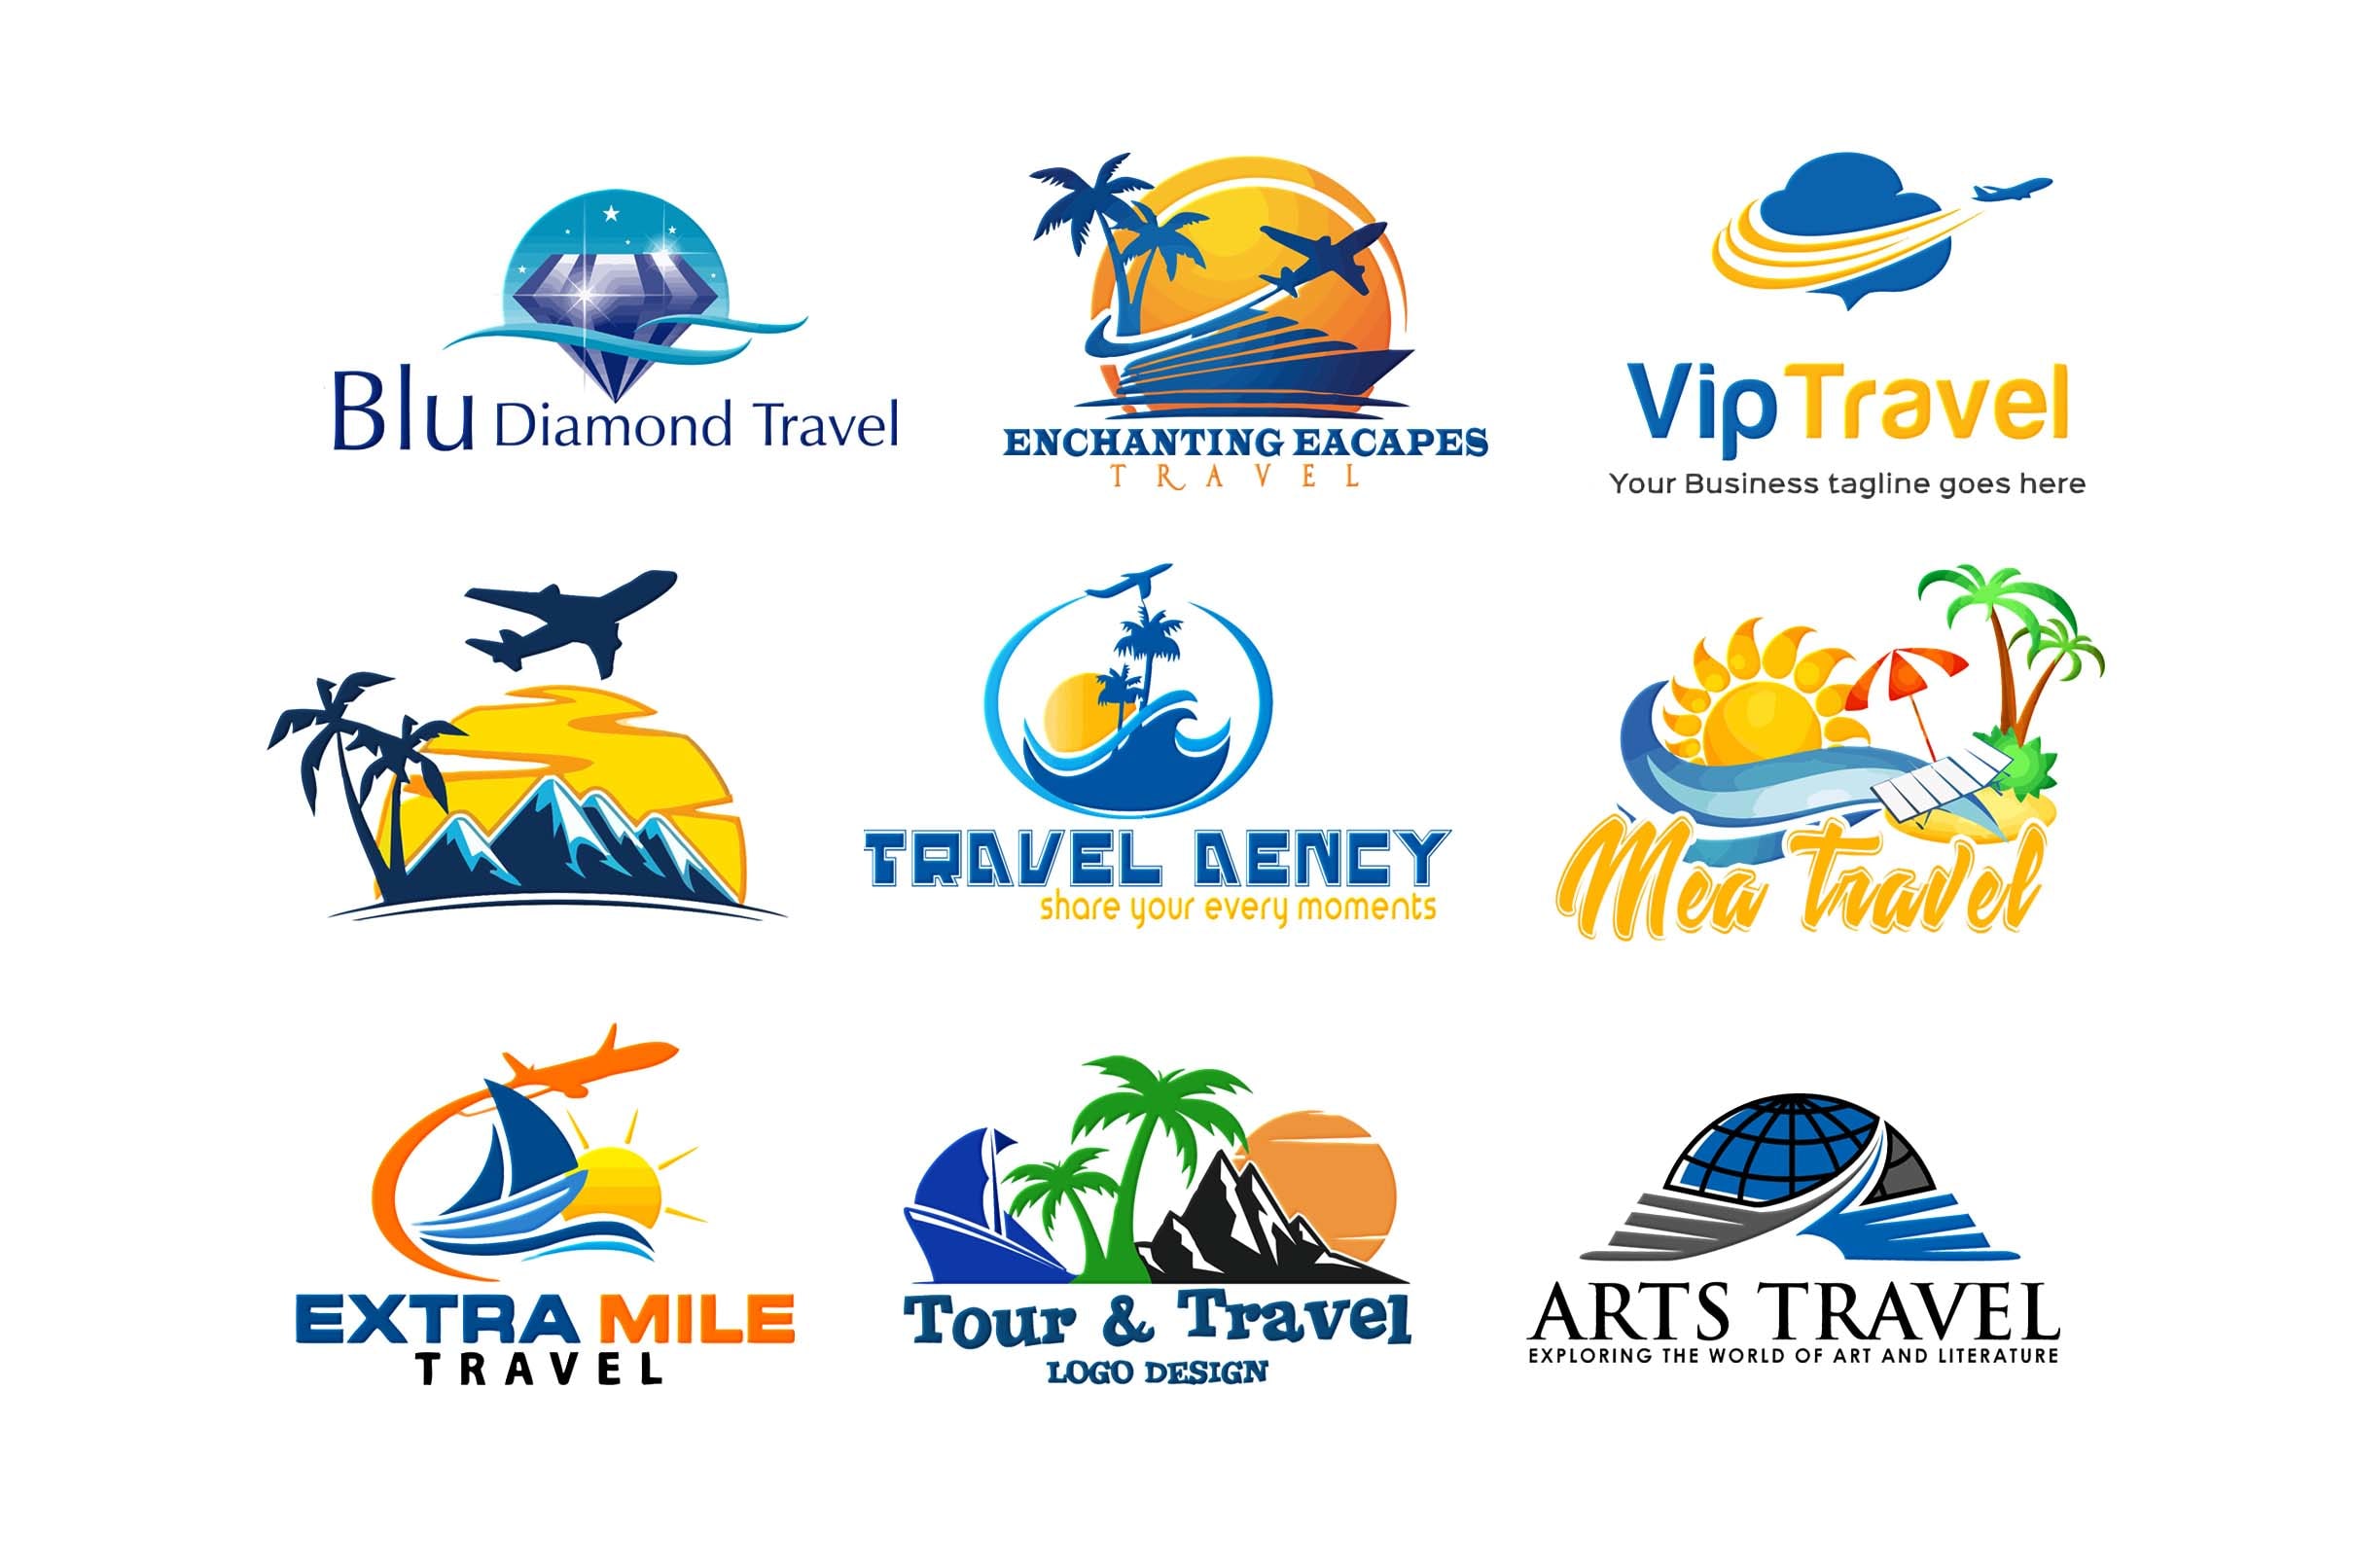 a tour & travel company